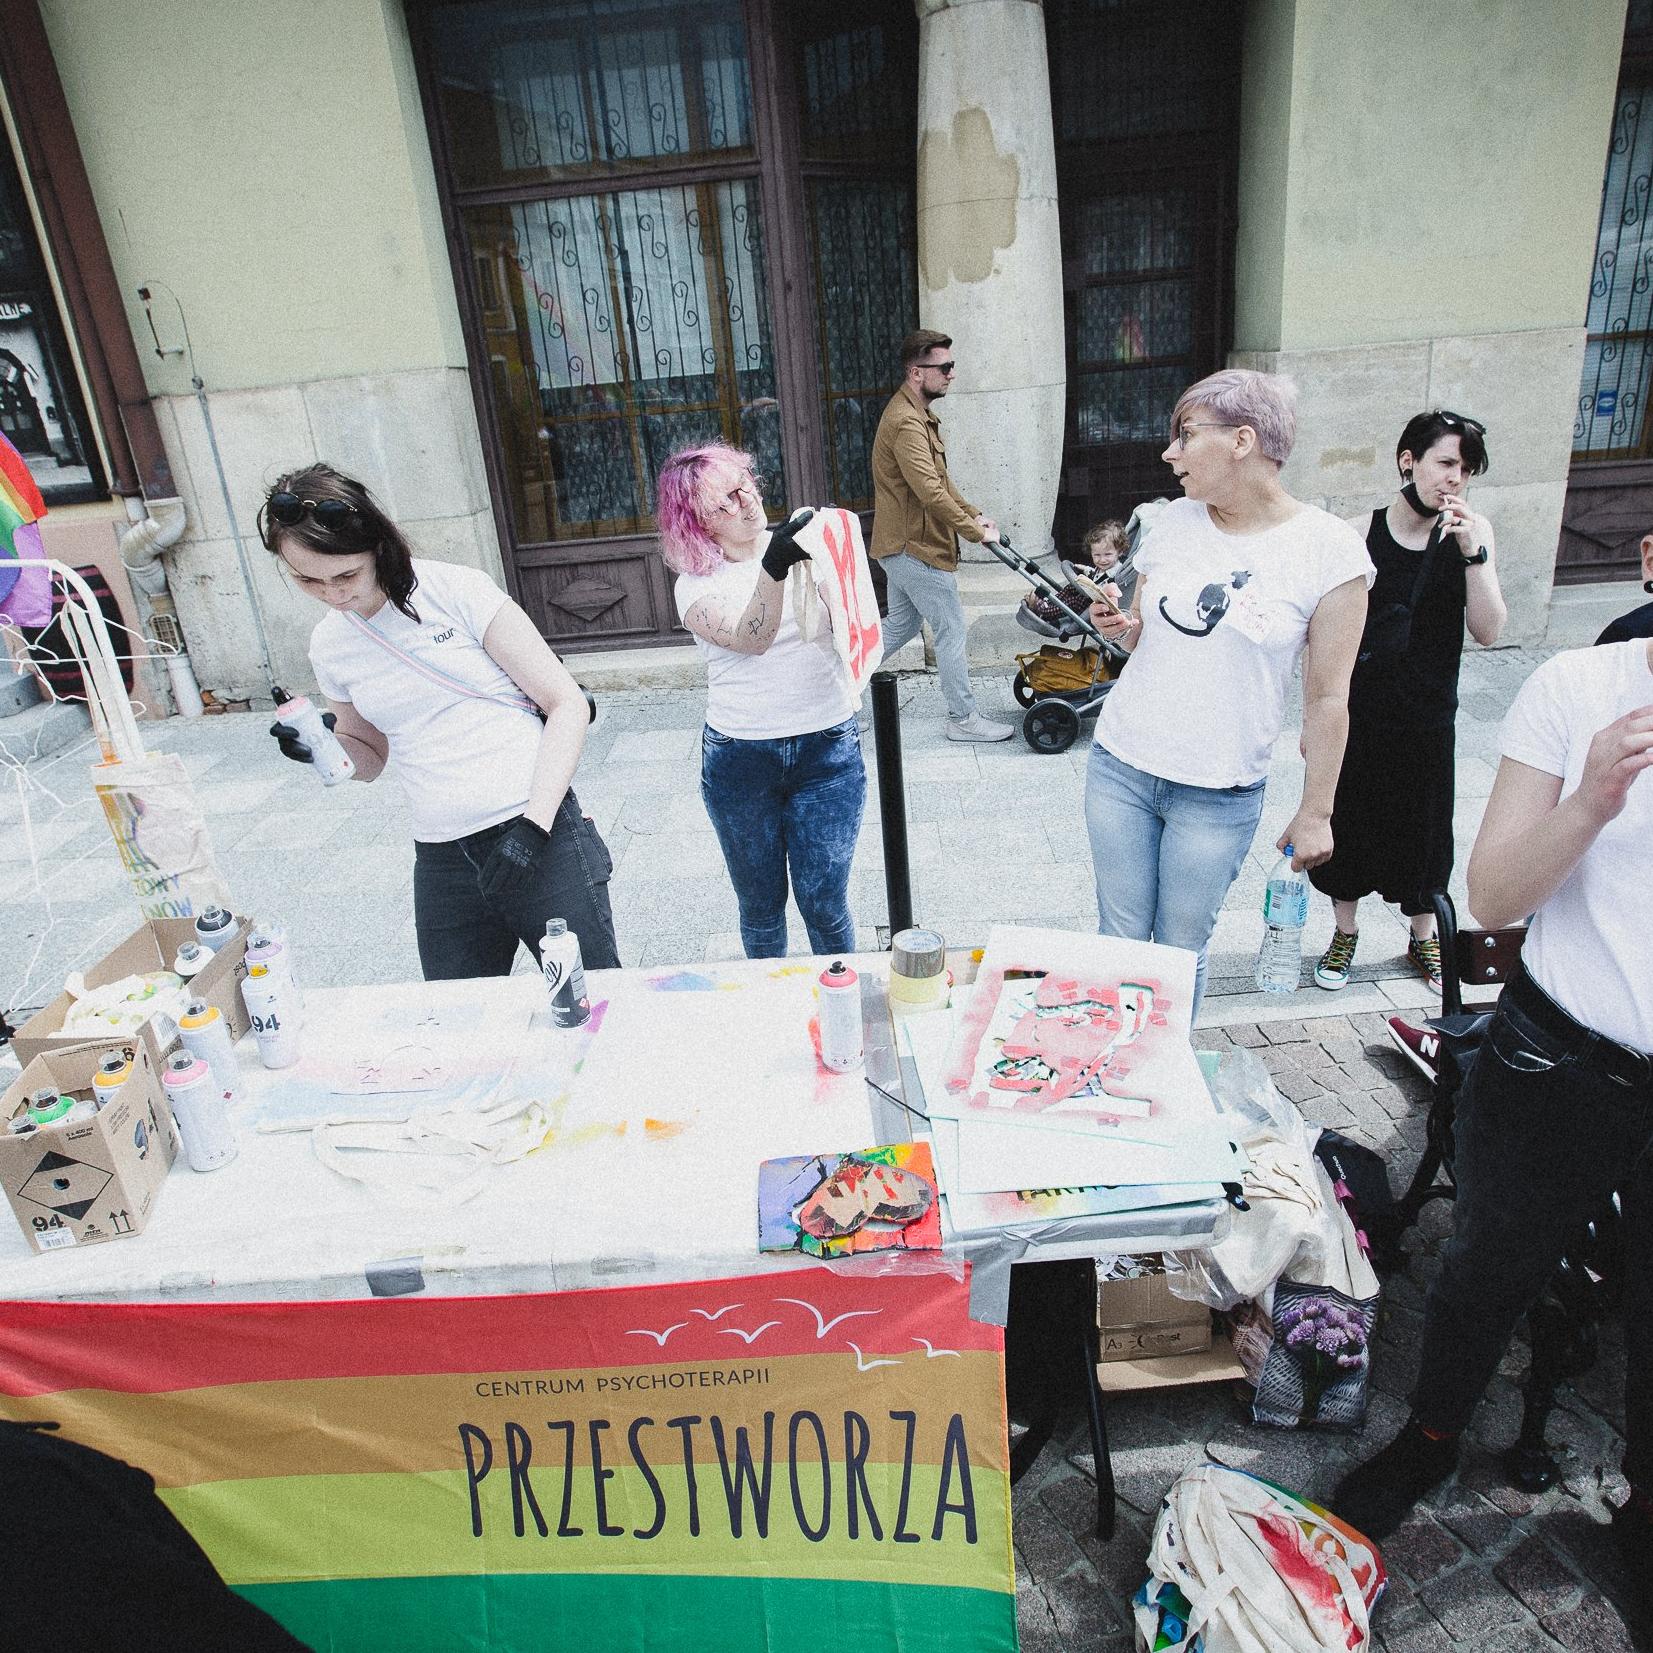 Tarnów, 16.05.2021. Obchody Międzynarodowego Dnia Przeciw Homofobii, Bifobii i Transfobii. Aktywistki i aktywiści organizują akcje edukacyjne dla mieszkańców